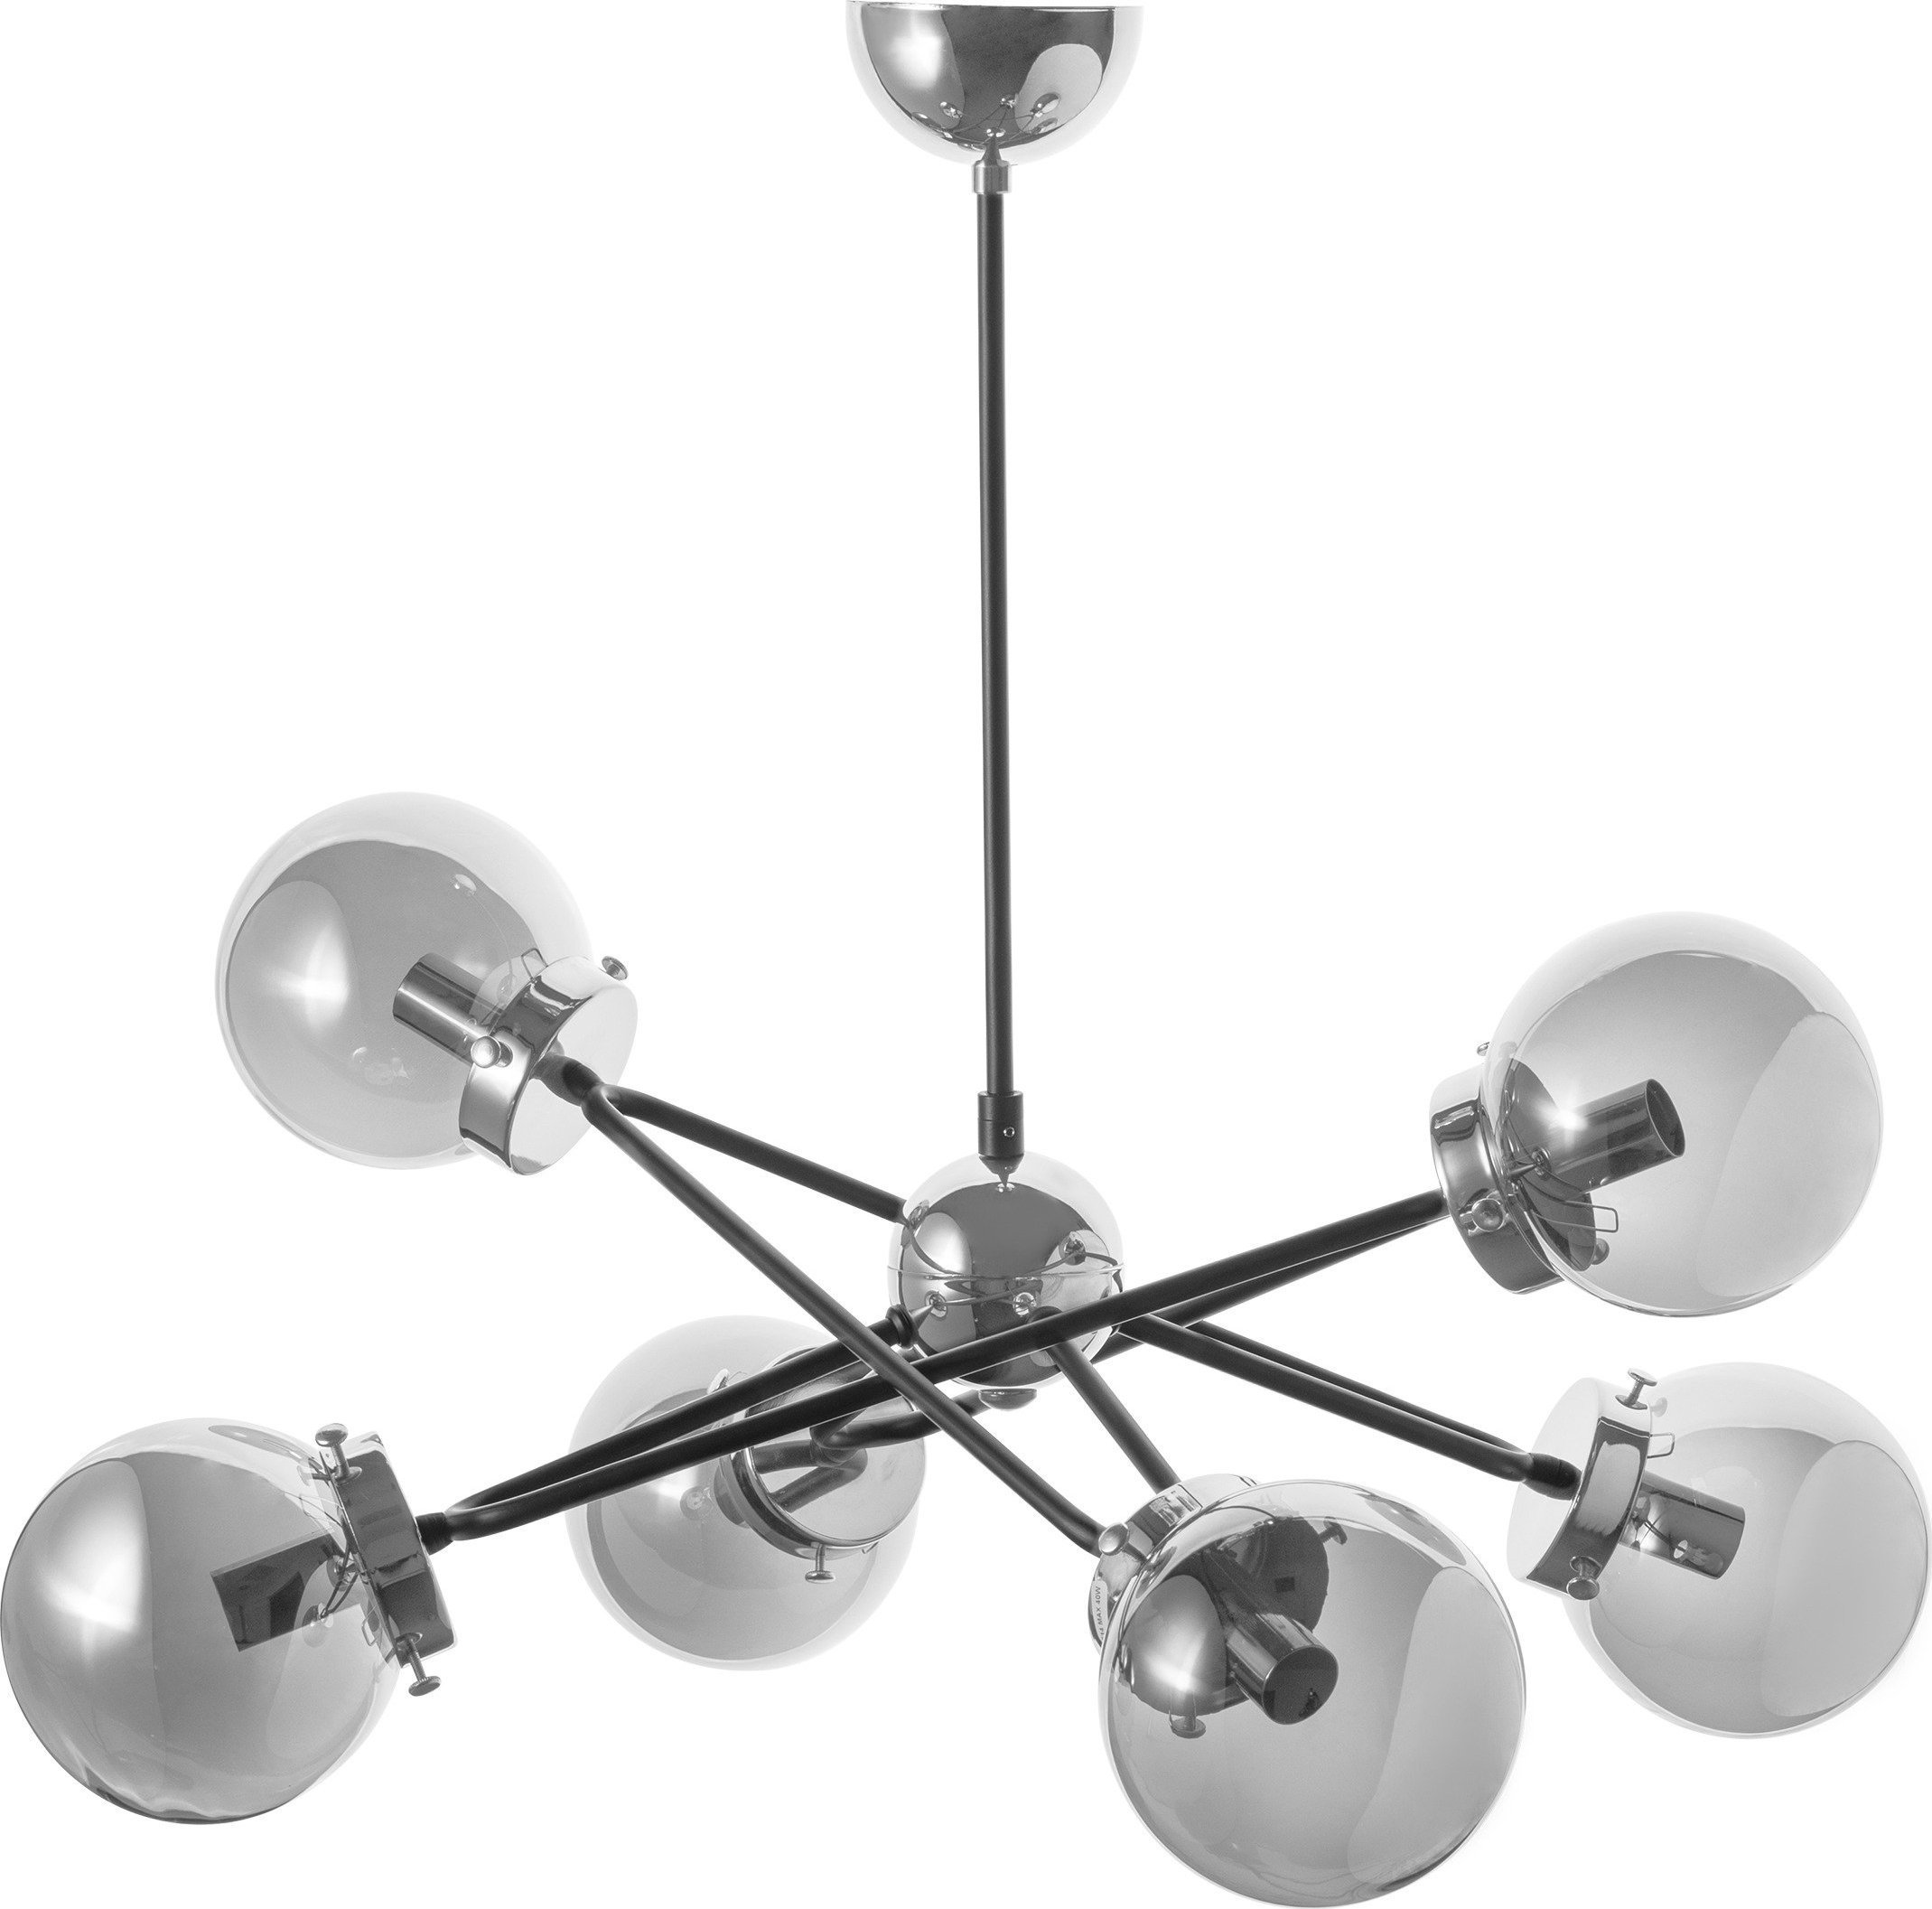 Lampă suspendată Orno GALAKSI 6P, lampă suspendată, E14 max. 6x 40W, crom